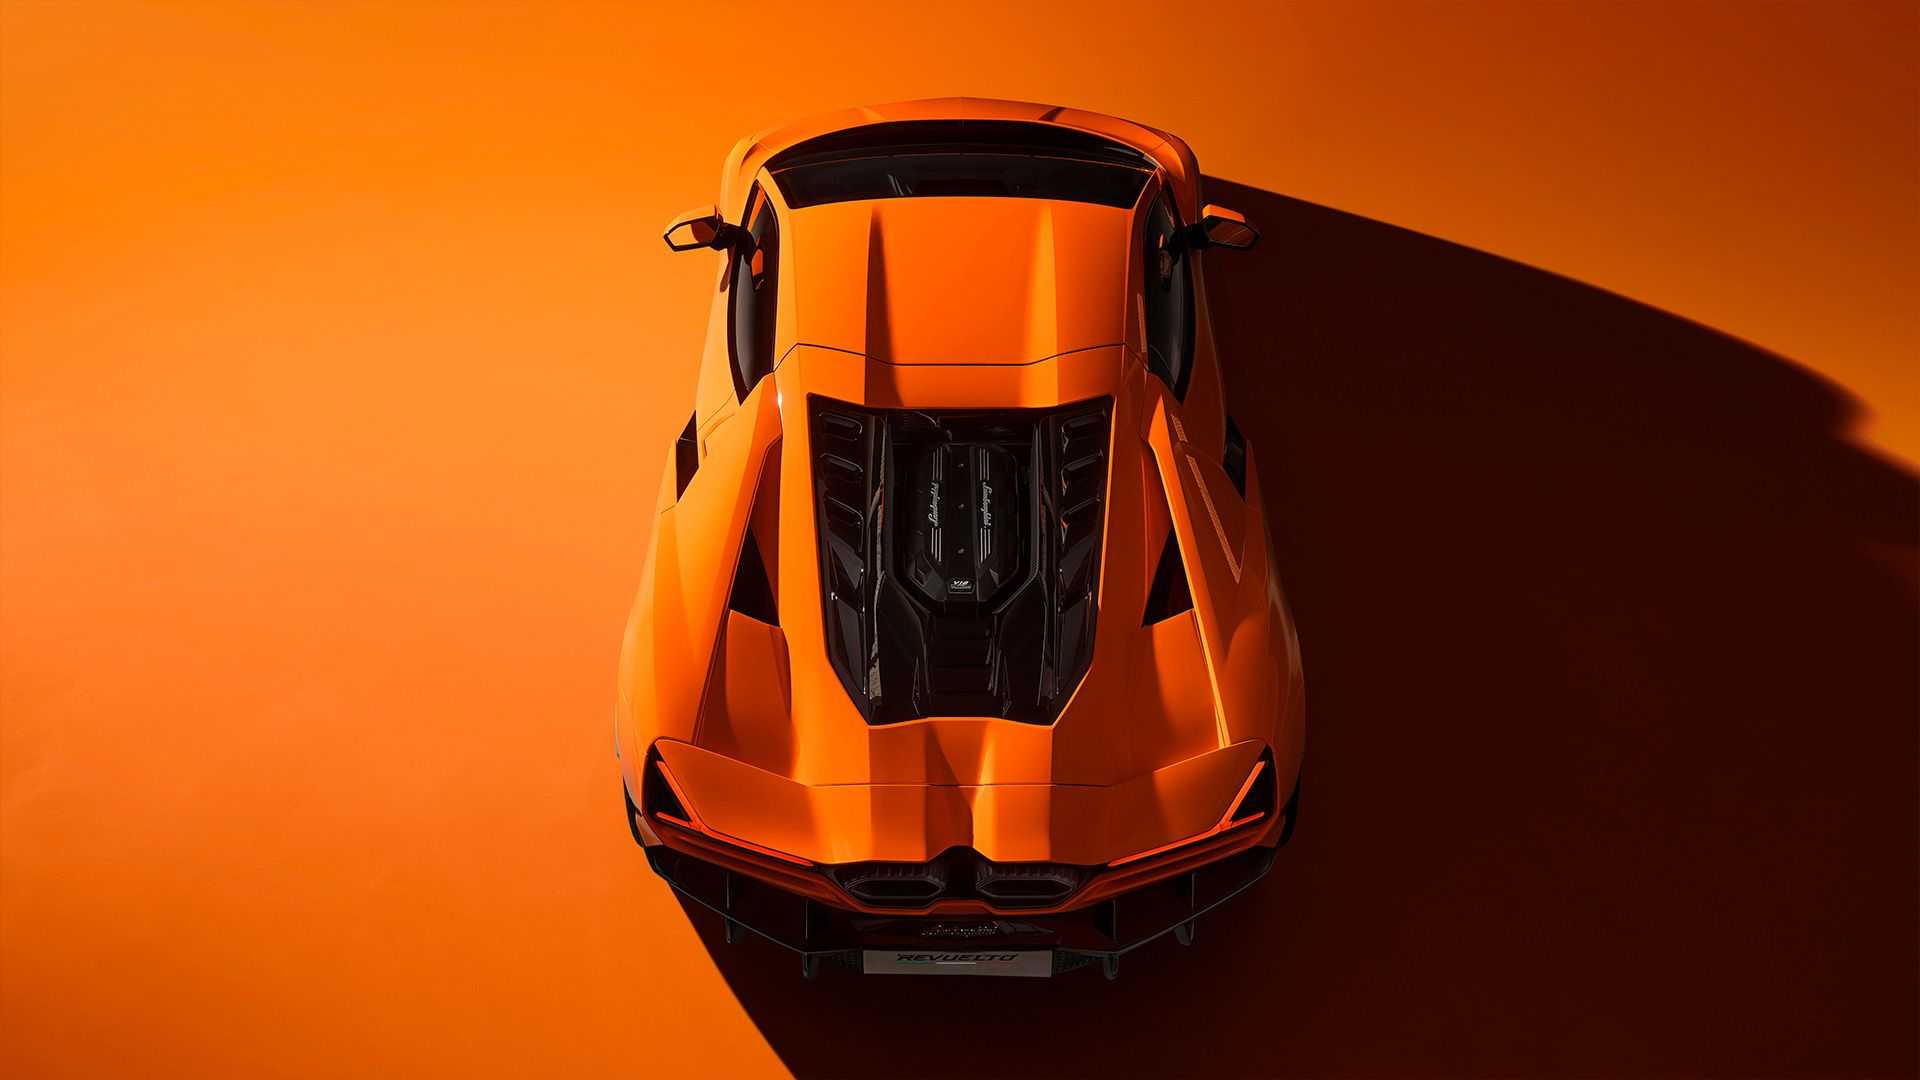 Ra mắt Lamborghini Revuelto thế chỗ Aventador: Siêu xe mạnh nhất lịch sử hãng nhưng đi phố chỉ ngang cơ Civic - ảnh 10